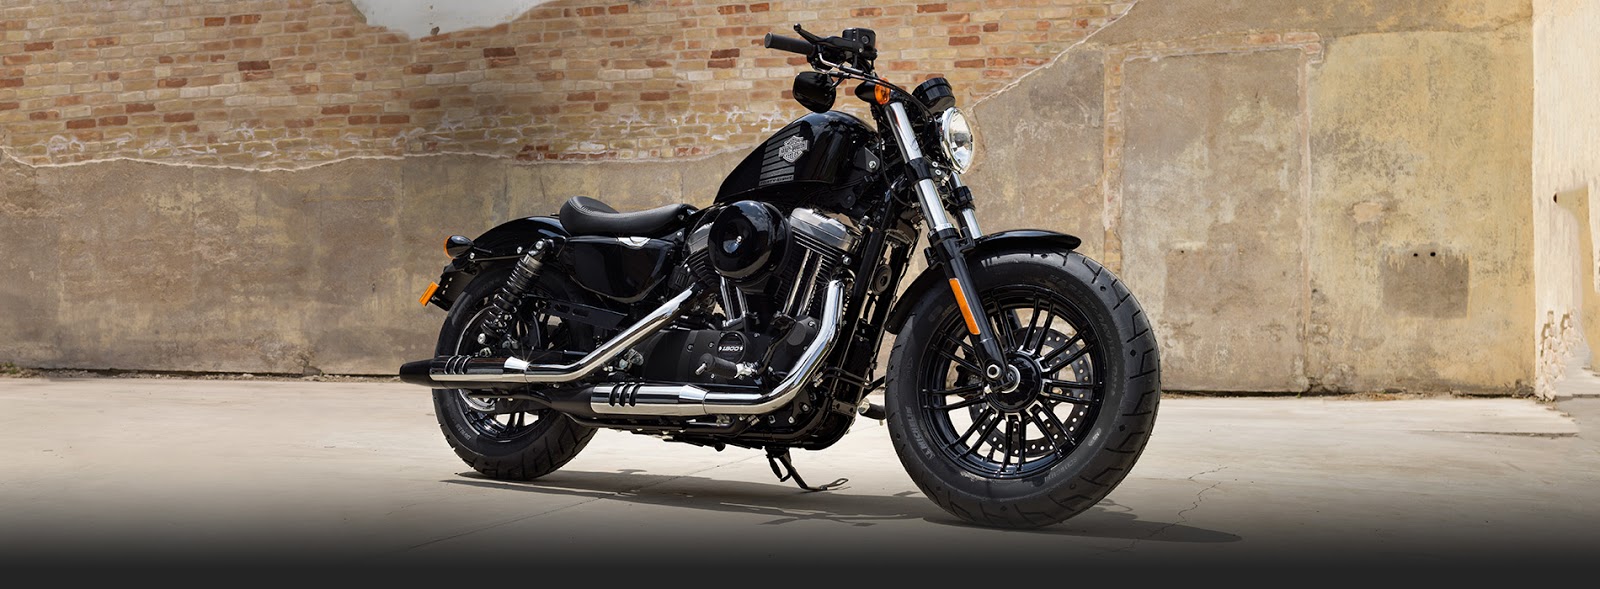 Daftar Harga Motor Harley Davidson Termurah Lengkap Dengan